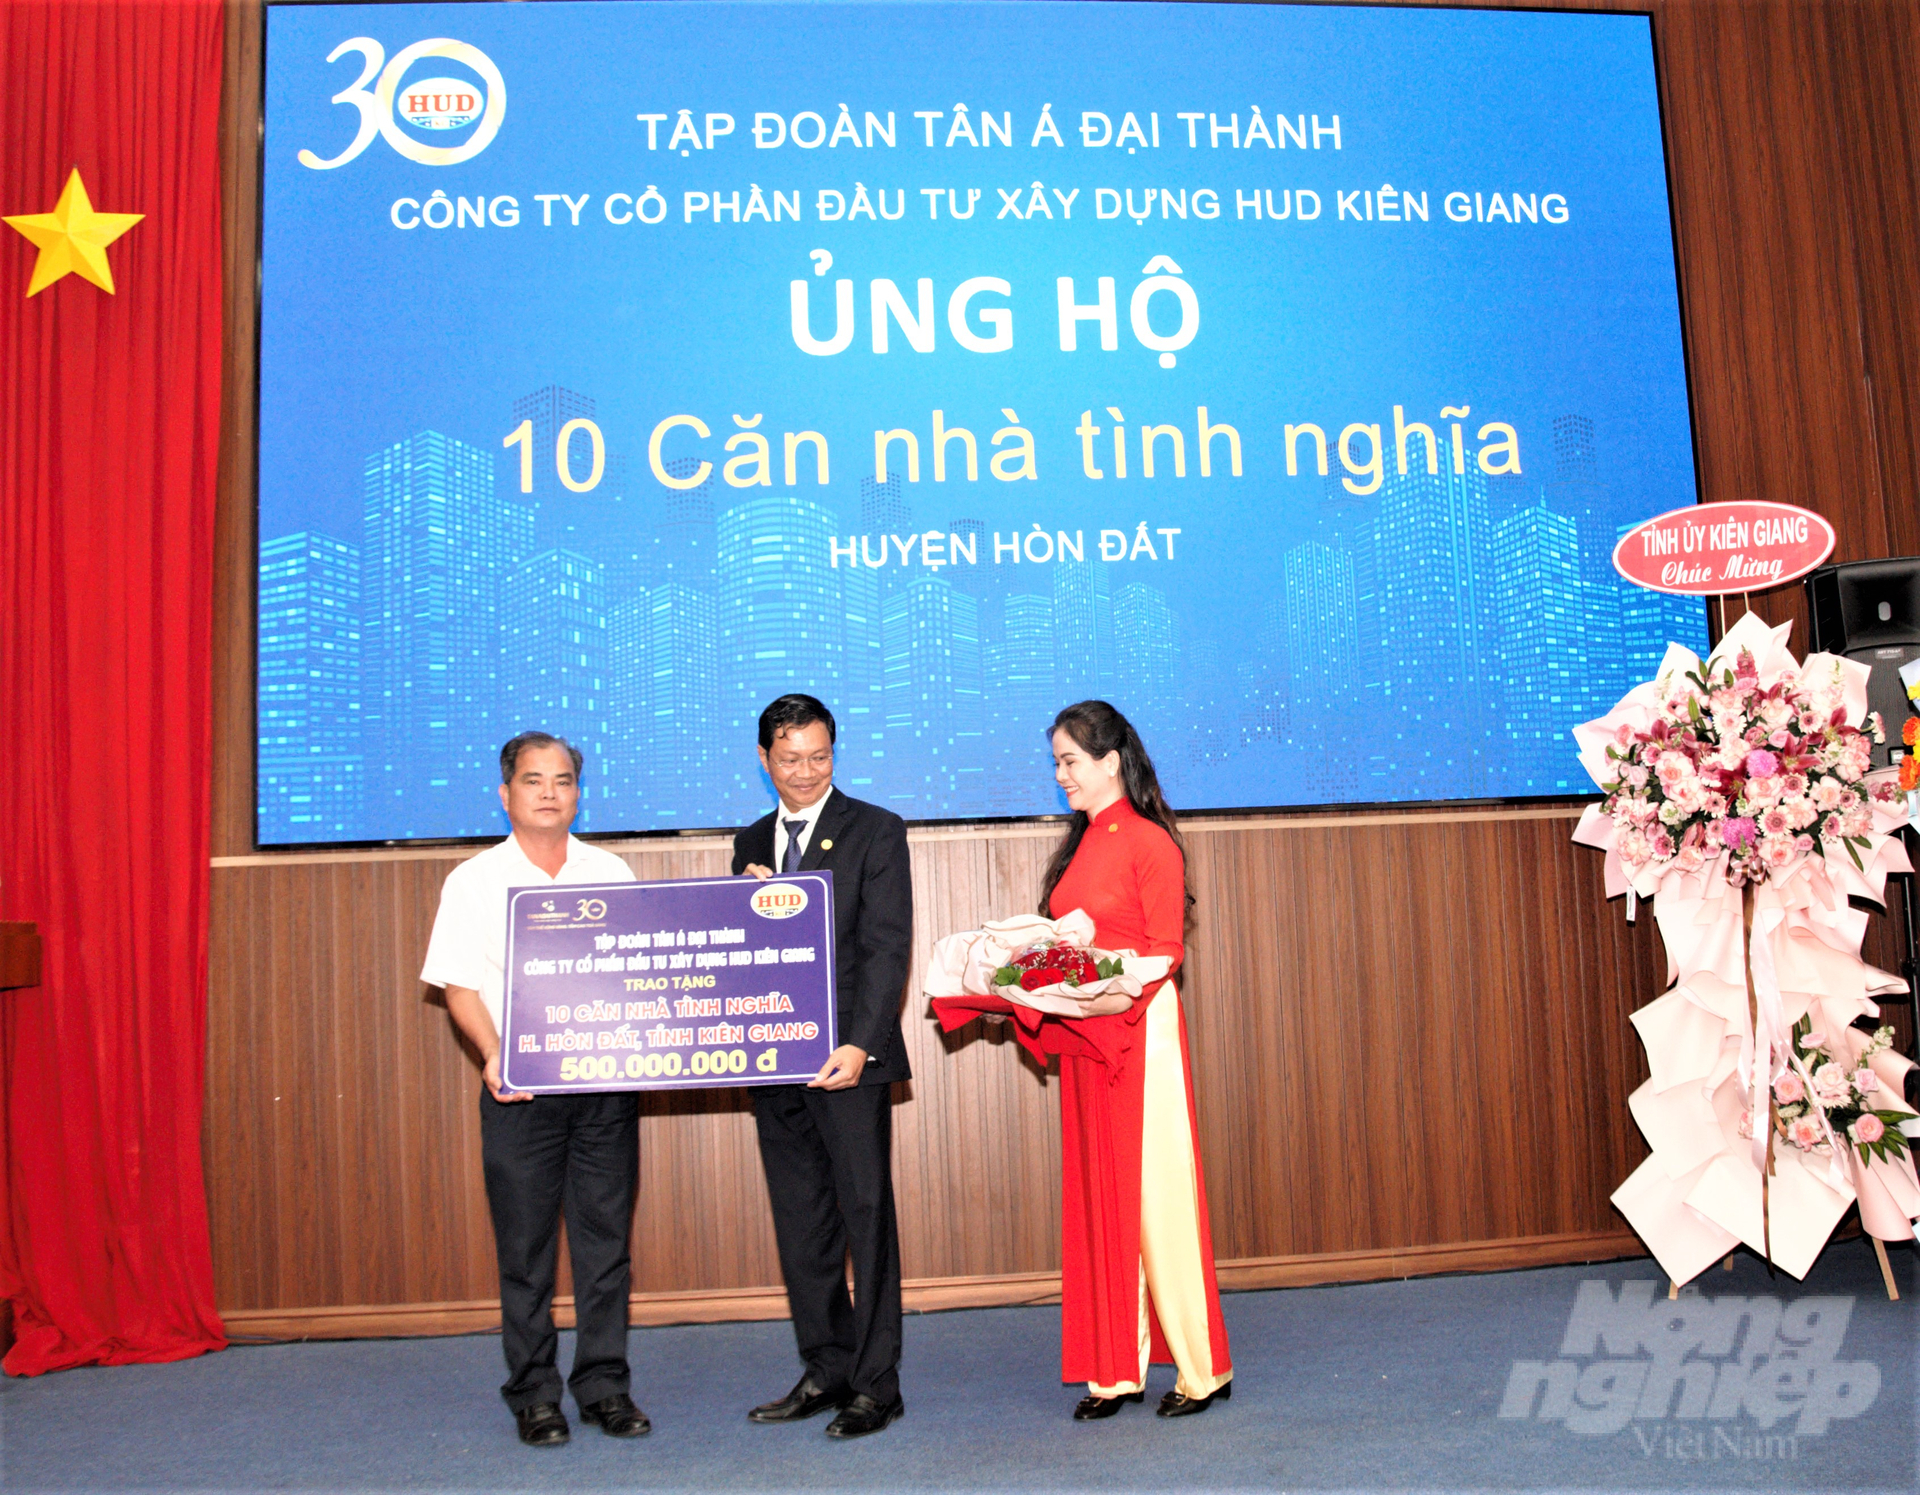 Công ty CP Đầu tư Xây dựng HUD Kiên Giang trao tặng cho đại diện lãnh đạo huyện Hòn Đất 500 triệu đồng để xây dựng 10 căn nhà tình nghĩa cho các hộ gia đình chính sách, hộ nghèo trên địa bàn. Ảnh: Trung Chánh.